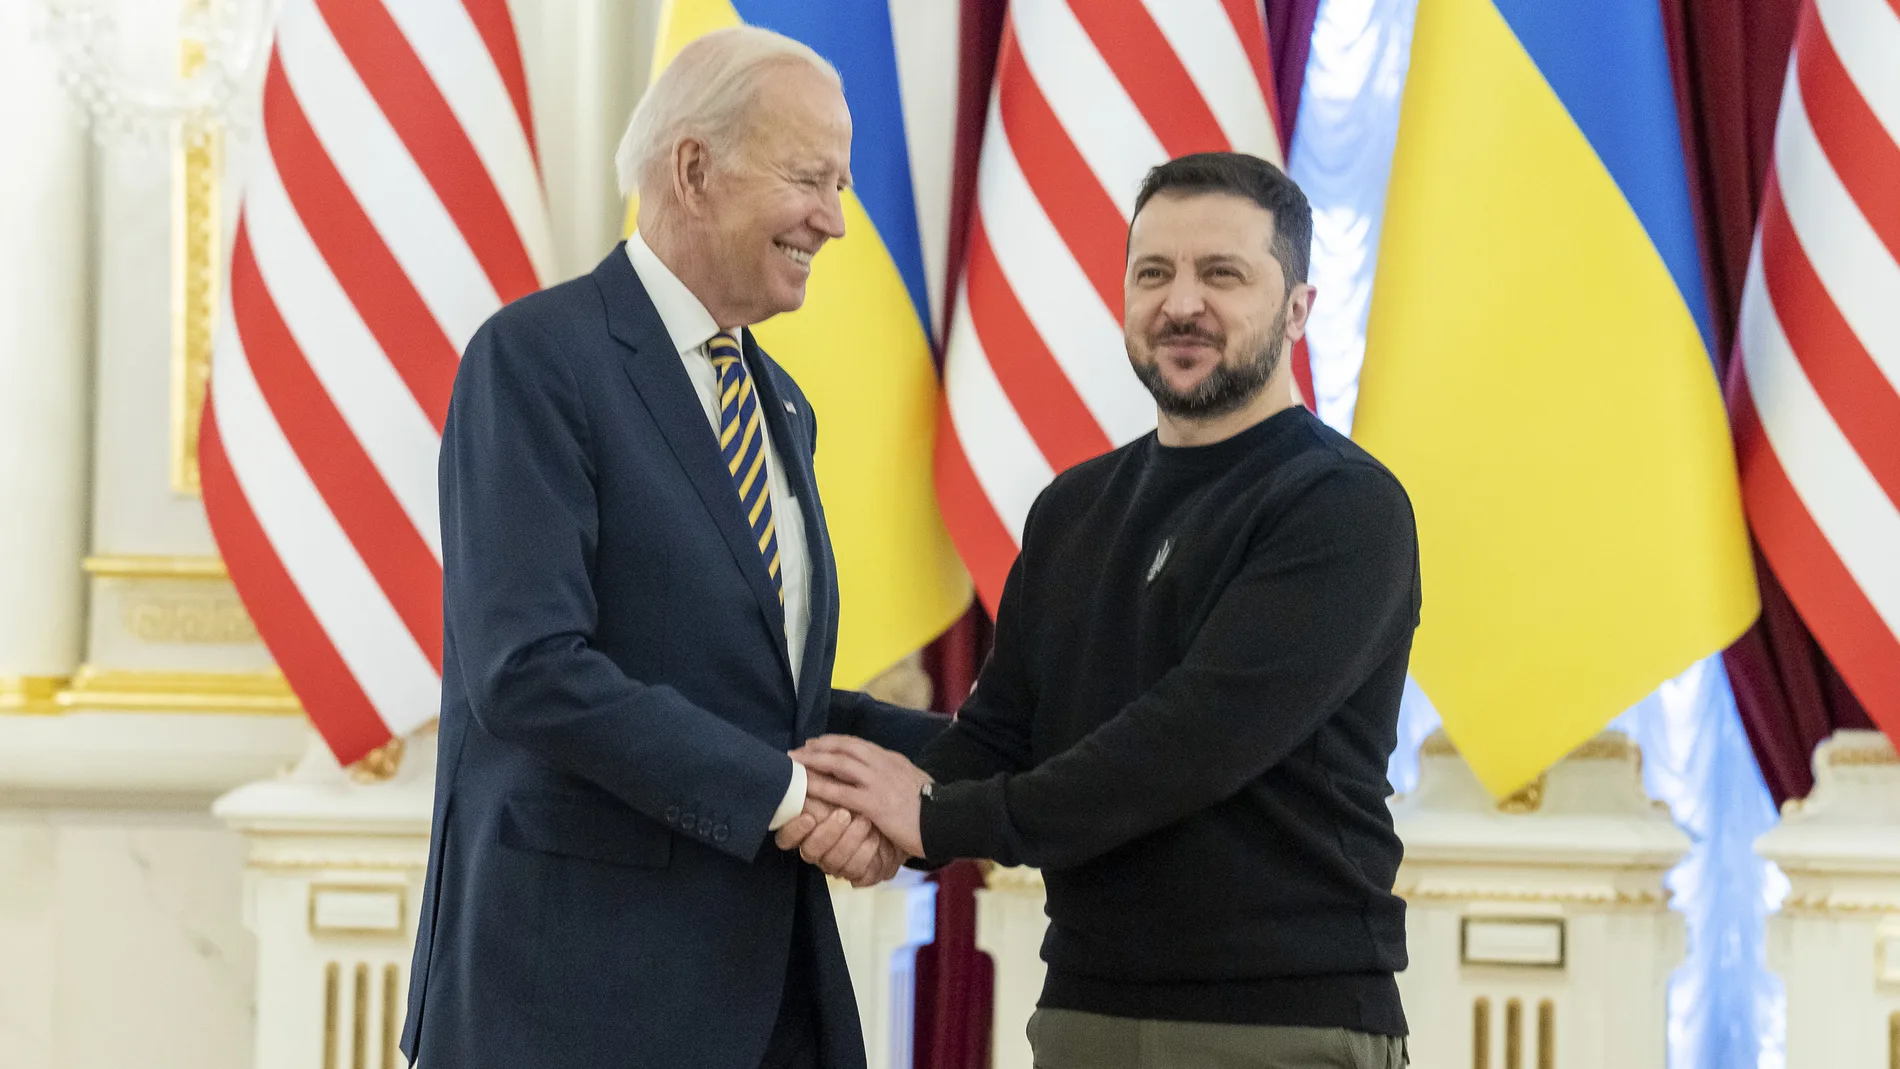 AMP.- Ucrania.- Biden recibirá a Zelenski el jueves en la Casa Blanca